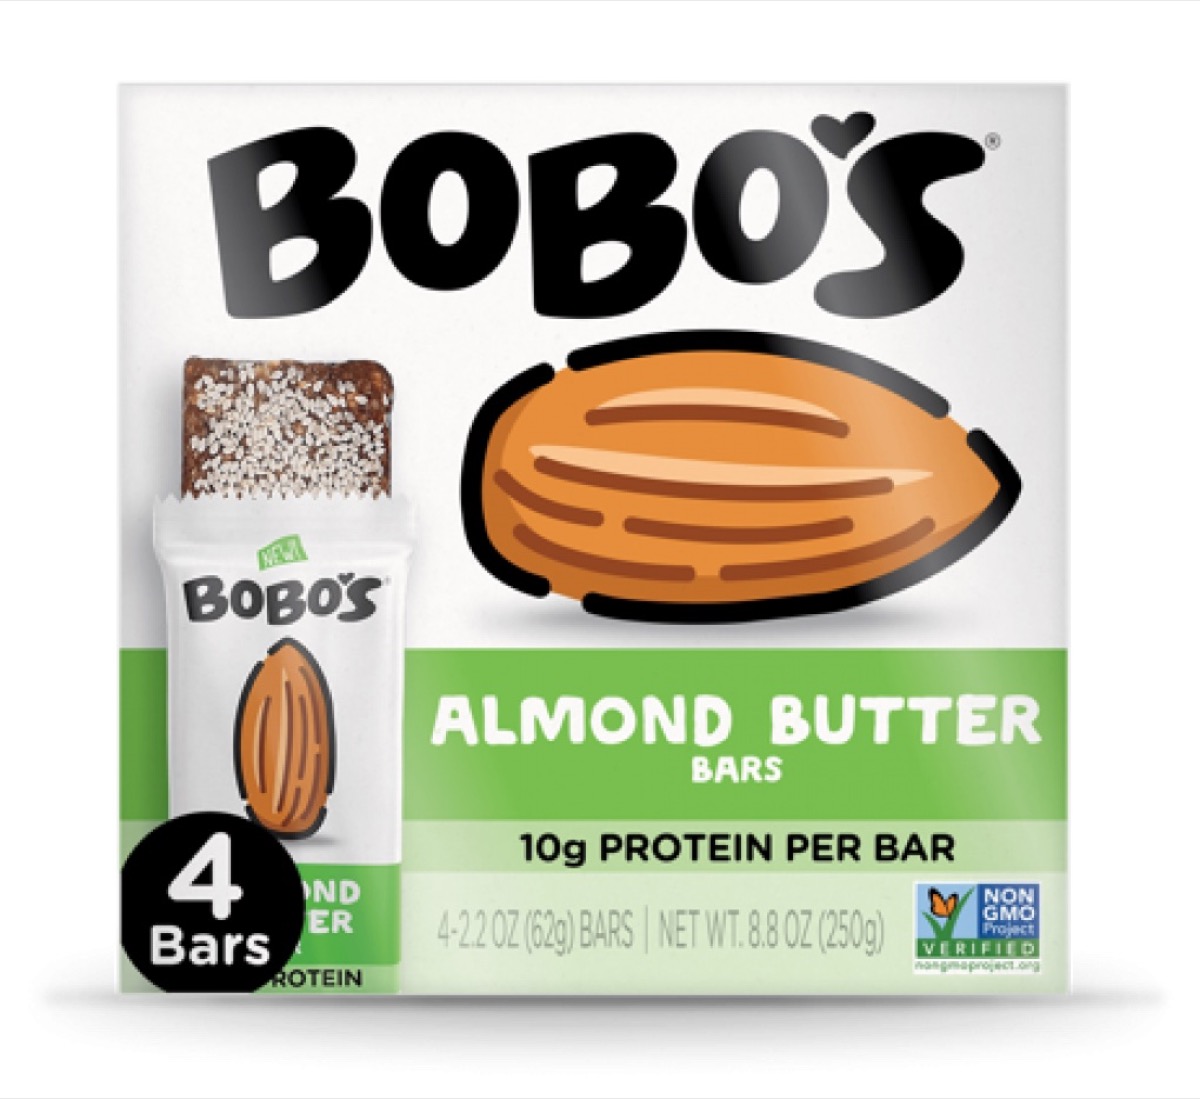 bobo's almond butter bars box against white background